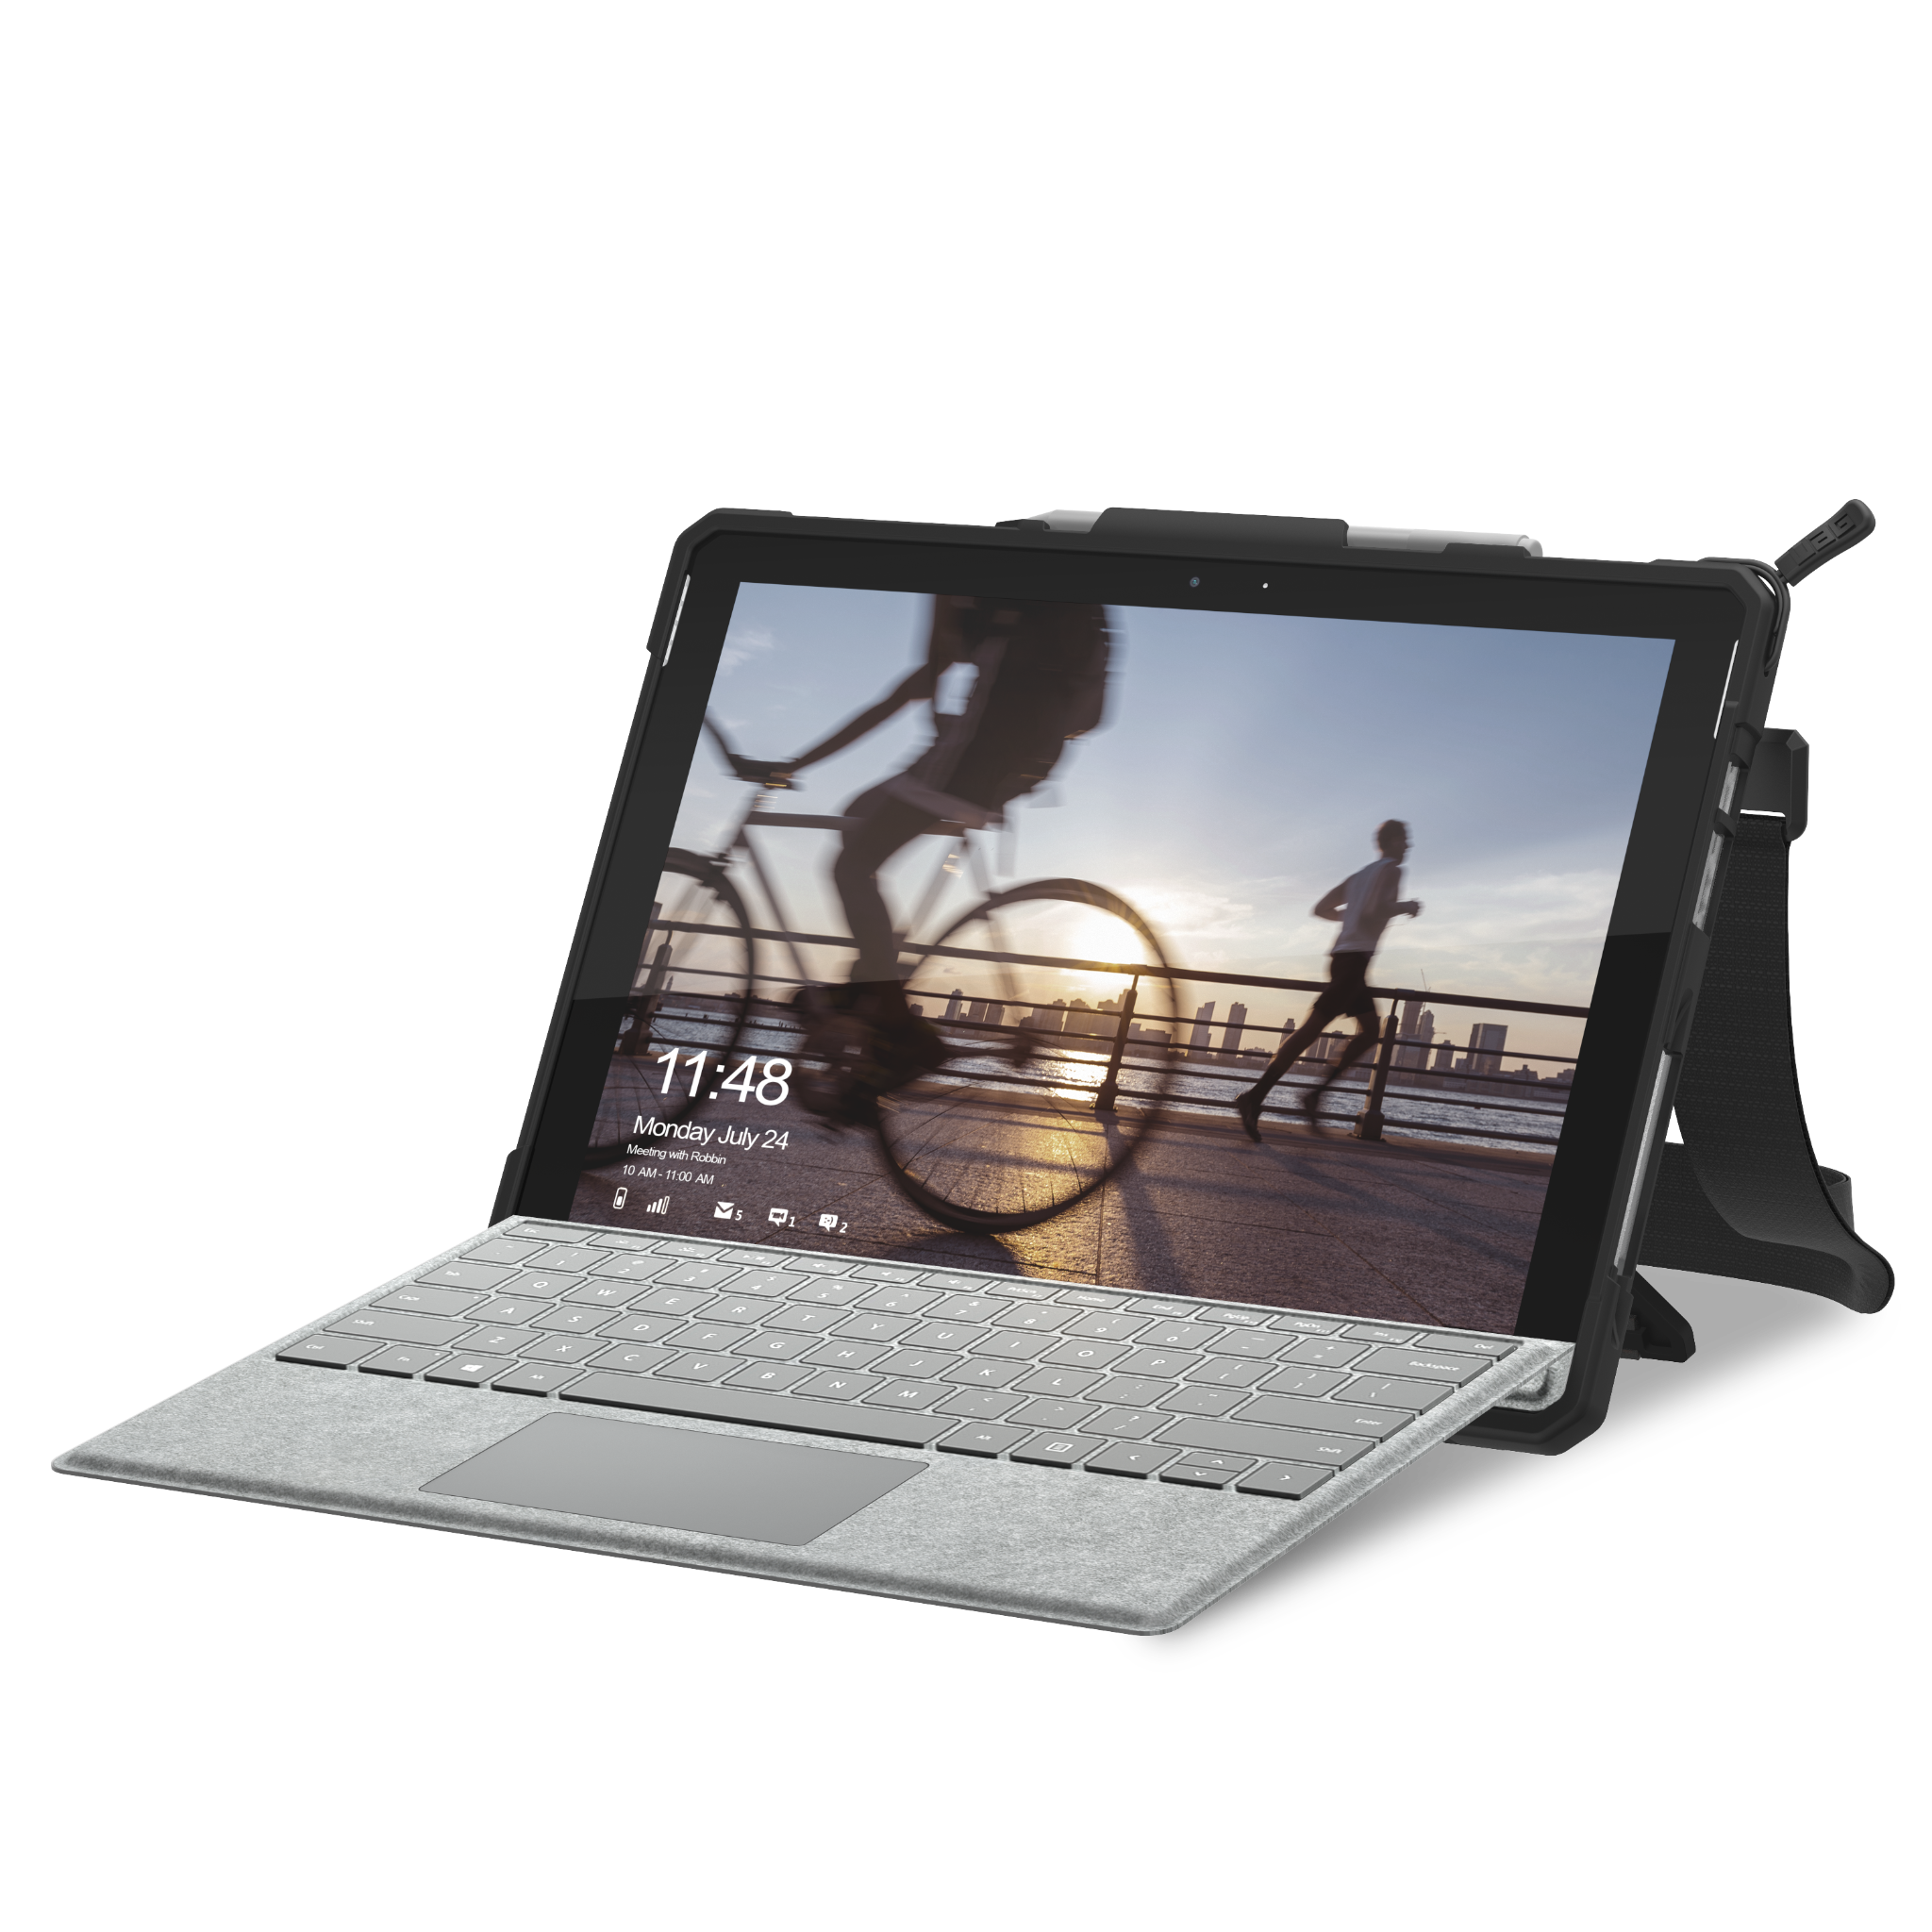  Ốp lưng UAG Plasma cho Microsoft Surface Pro 7/6/5/4 có Quai xách và Dây đeo 